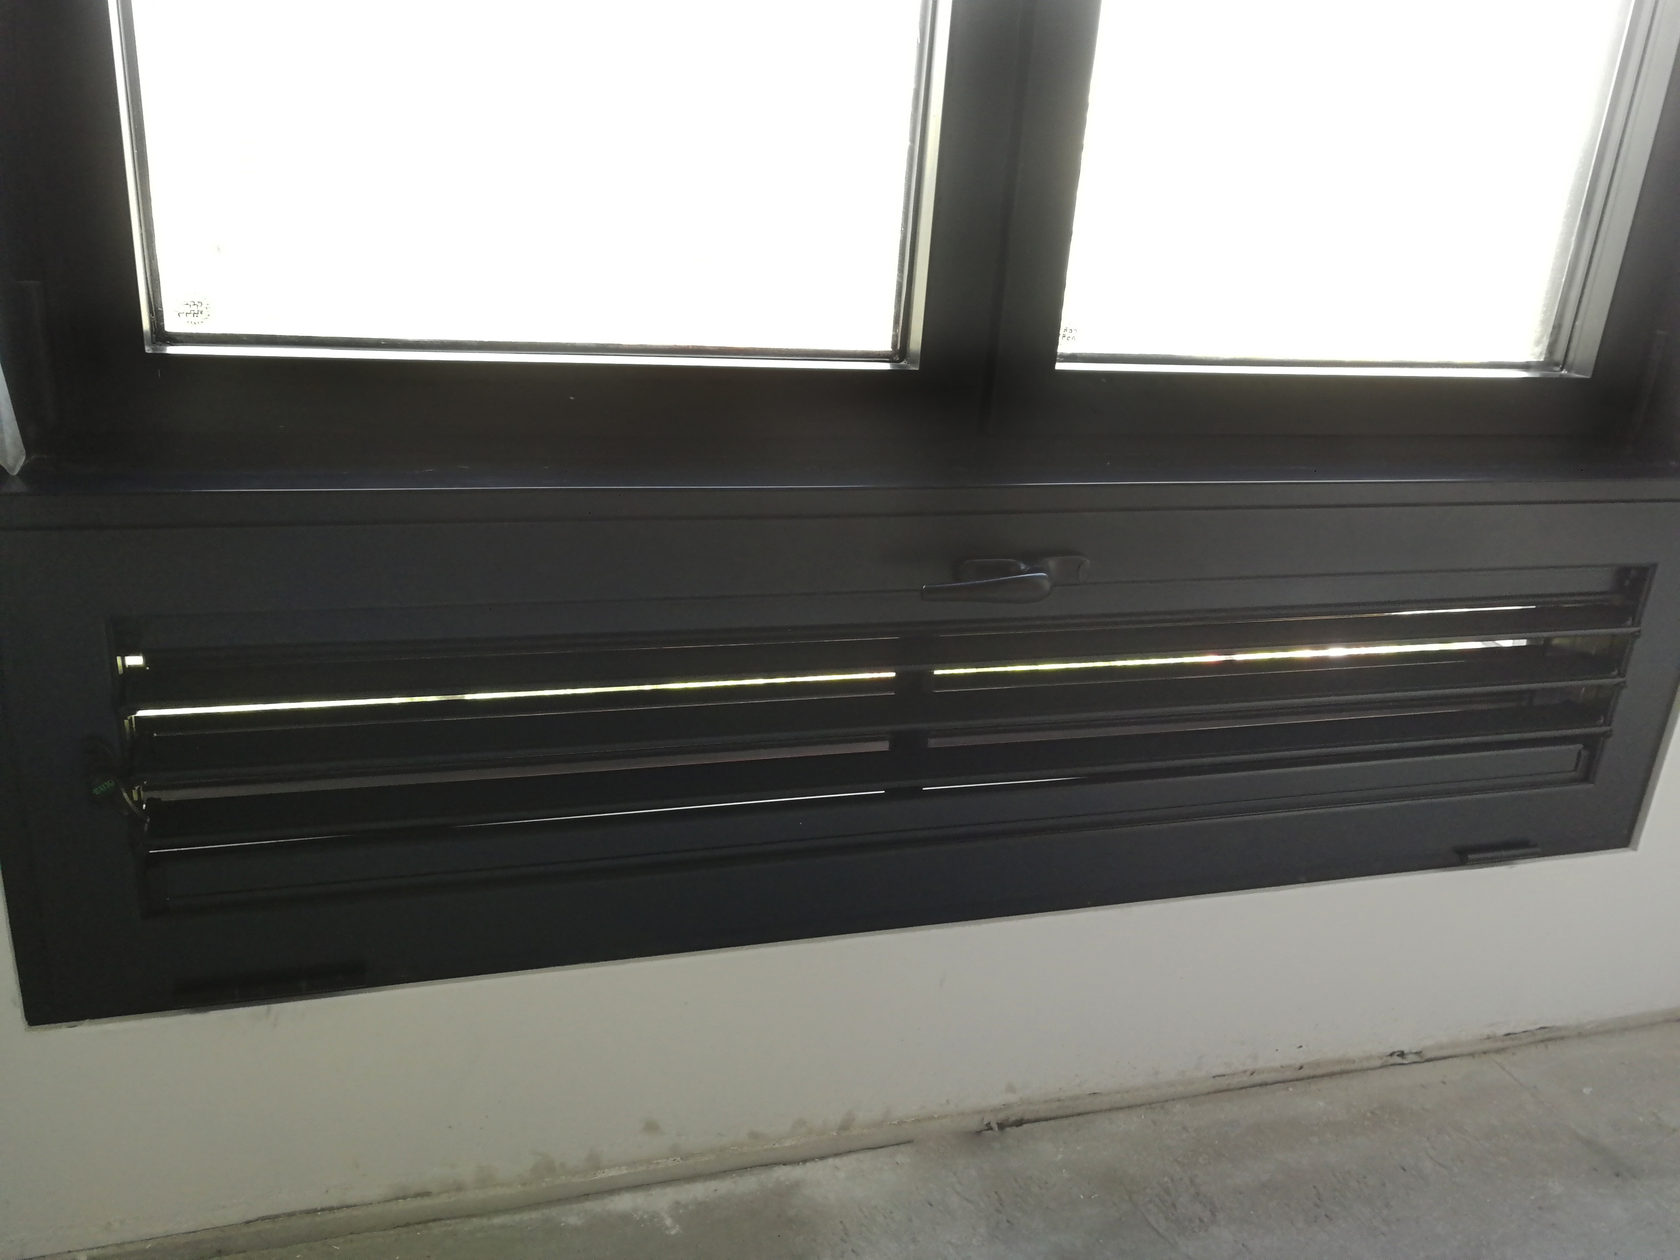 Регулируемая вентиляционная решетка на балконе. Вместо статичной решетки от застройщика в ЖК Царская Площадь